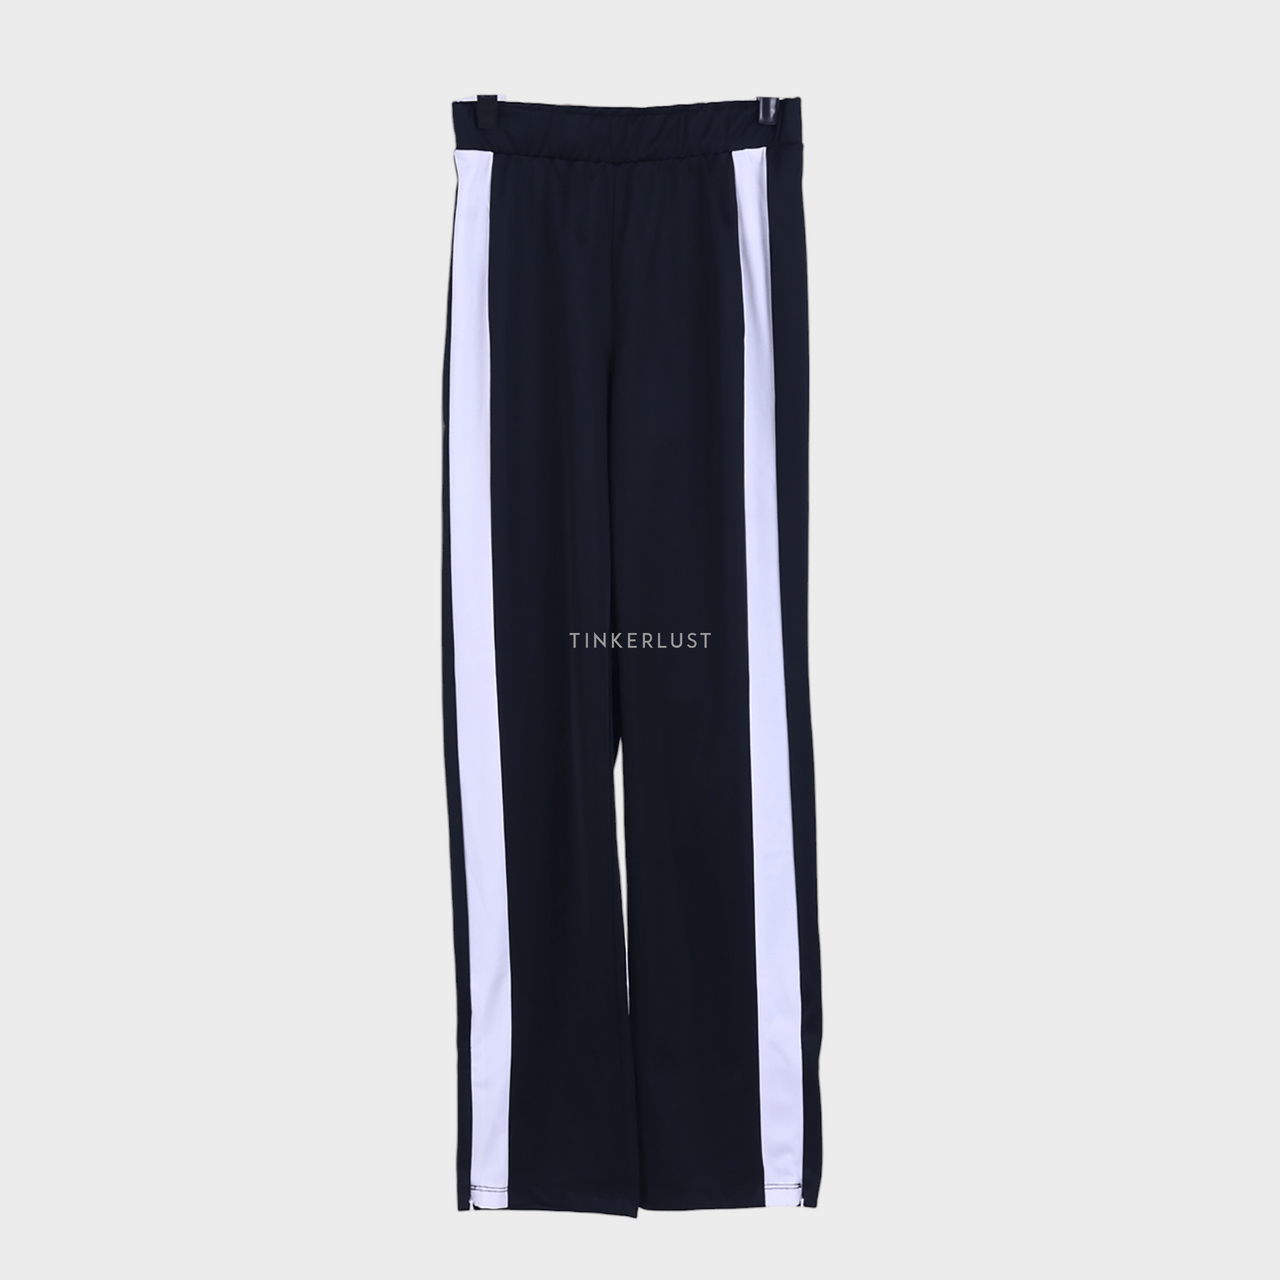 H&M Black & White Long Pants